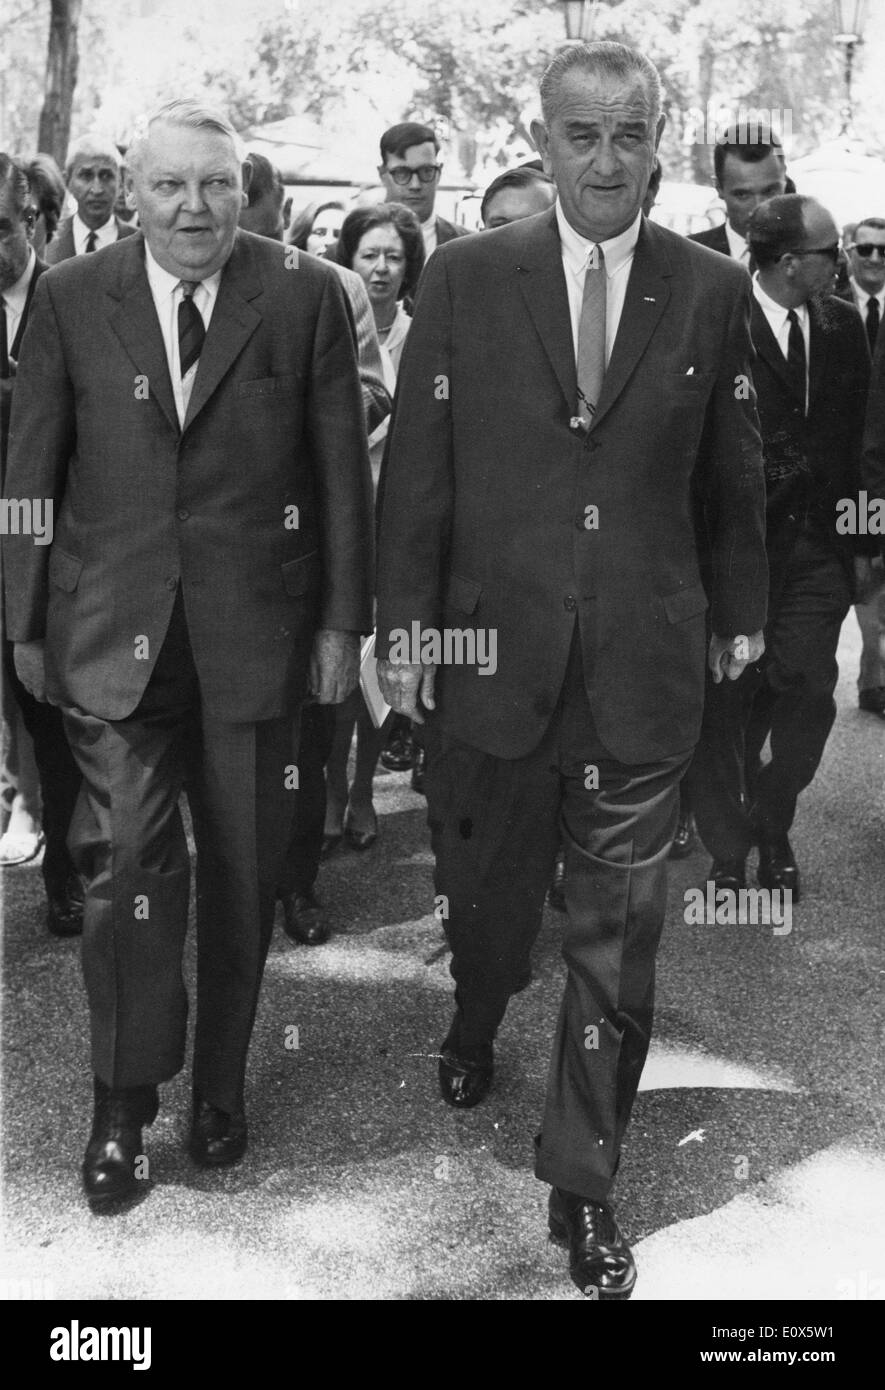 Junio 08, 1965 - Washington, Distrito de Columbia, EE.UU. - Lyndon Baines Johnson (27 de agosto de 1908 - 22 de enero de 1973) a menudo se refiere como LBJ, fue el 36º Presidente de los Estados Unidos (1963-1969) tras su servicio como la 37ª Vice Presidente de los Estados Unidos (1961-1963). Foto: con el canciller alemán occidental Dr. Erhard. Foto de stock